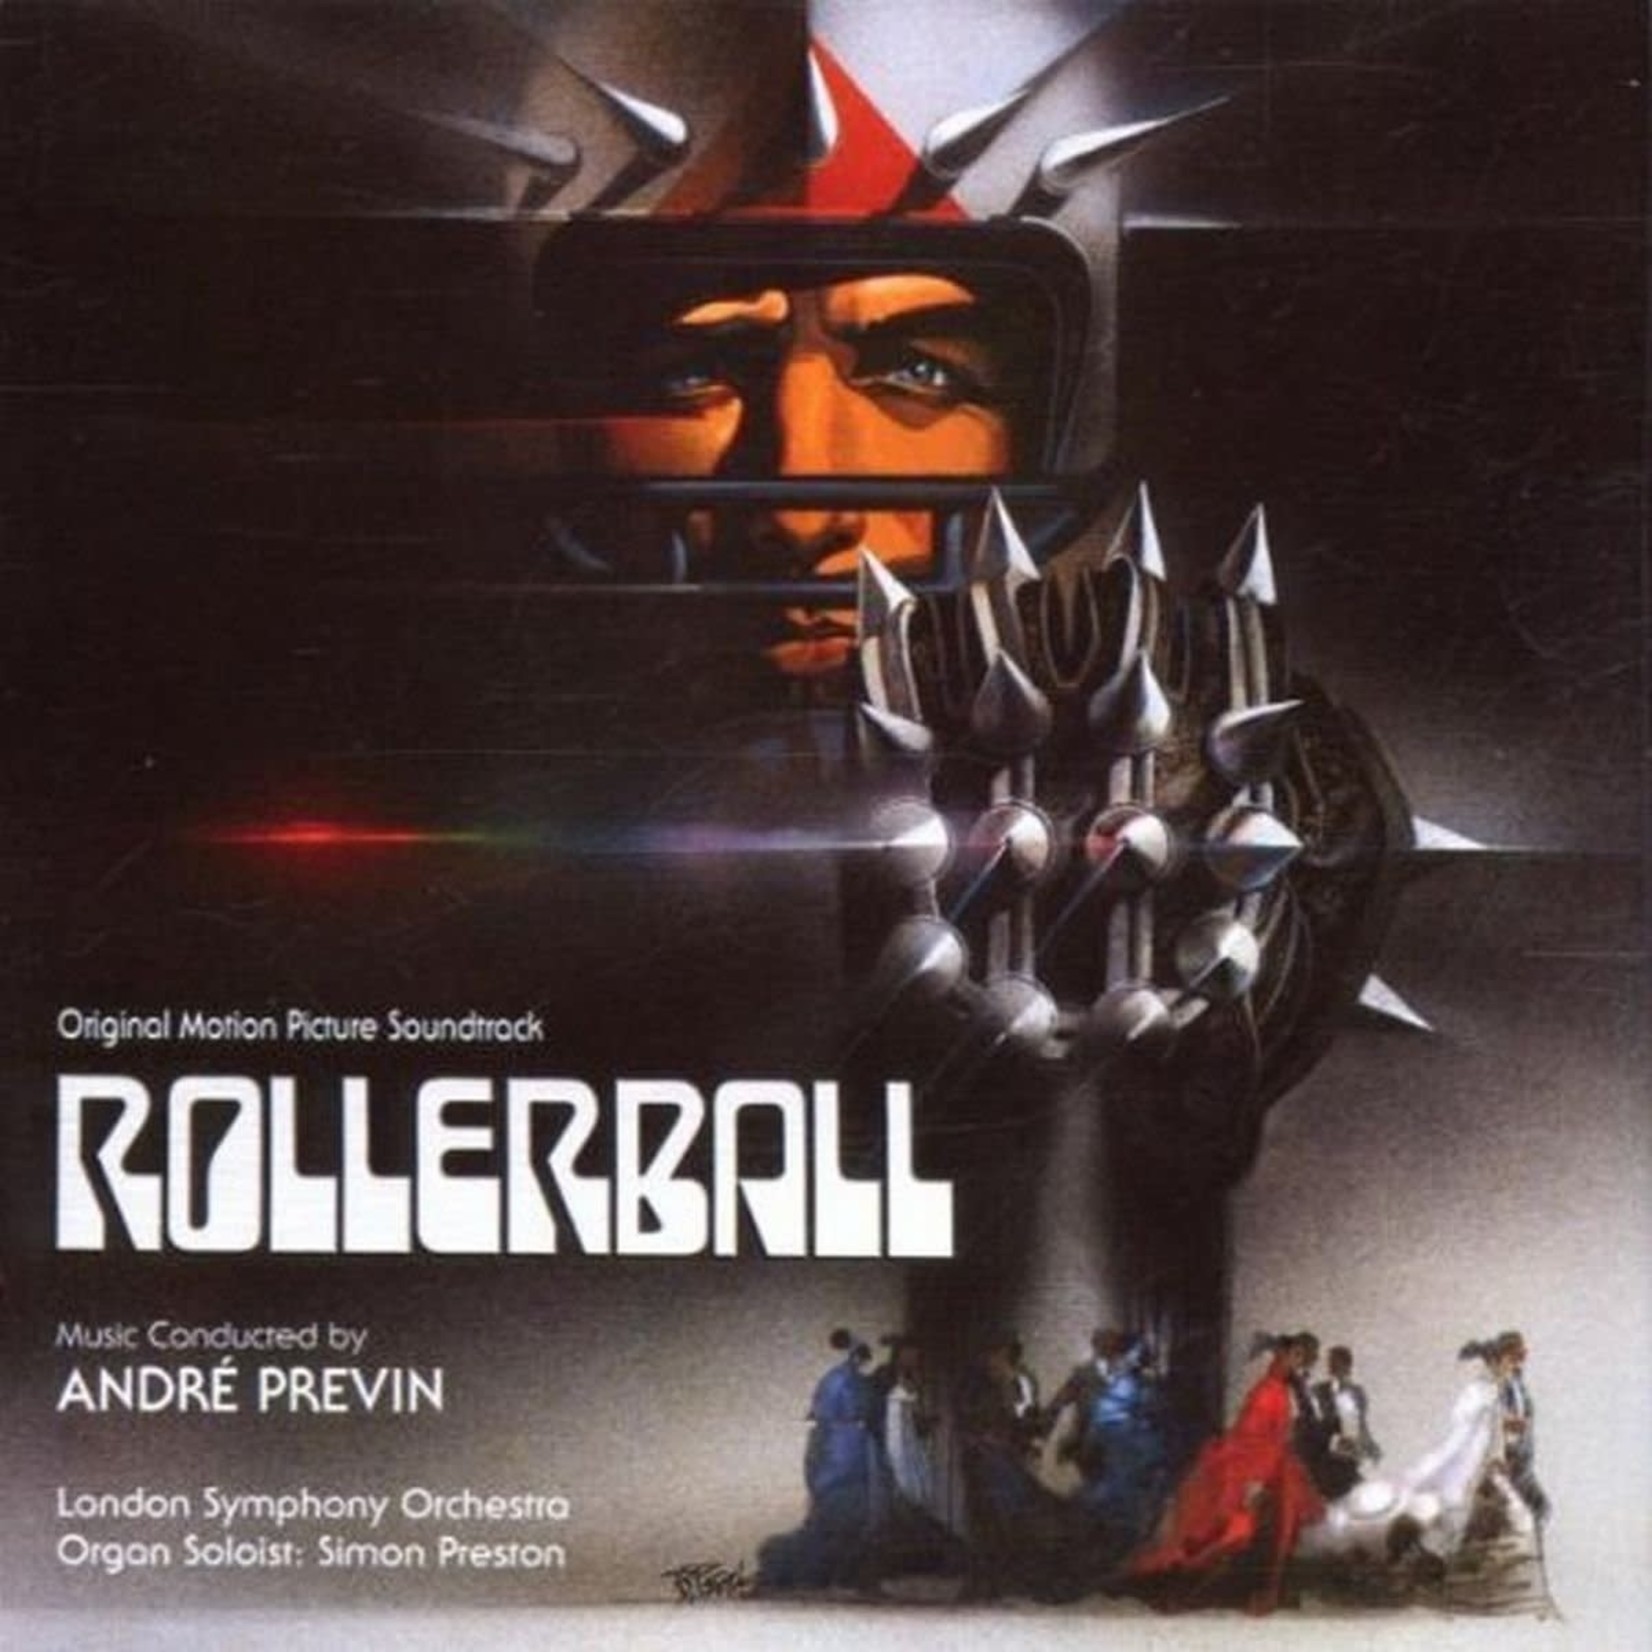 [Vintage] Andre Previn - Rollerball (soundtrack)